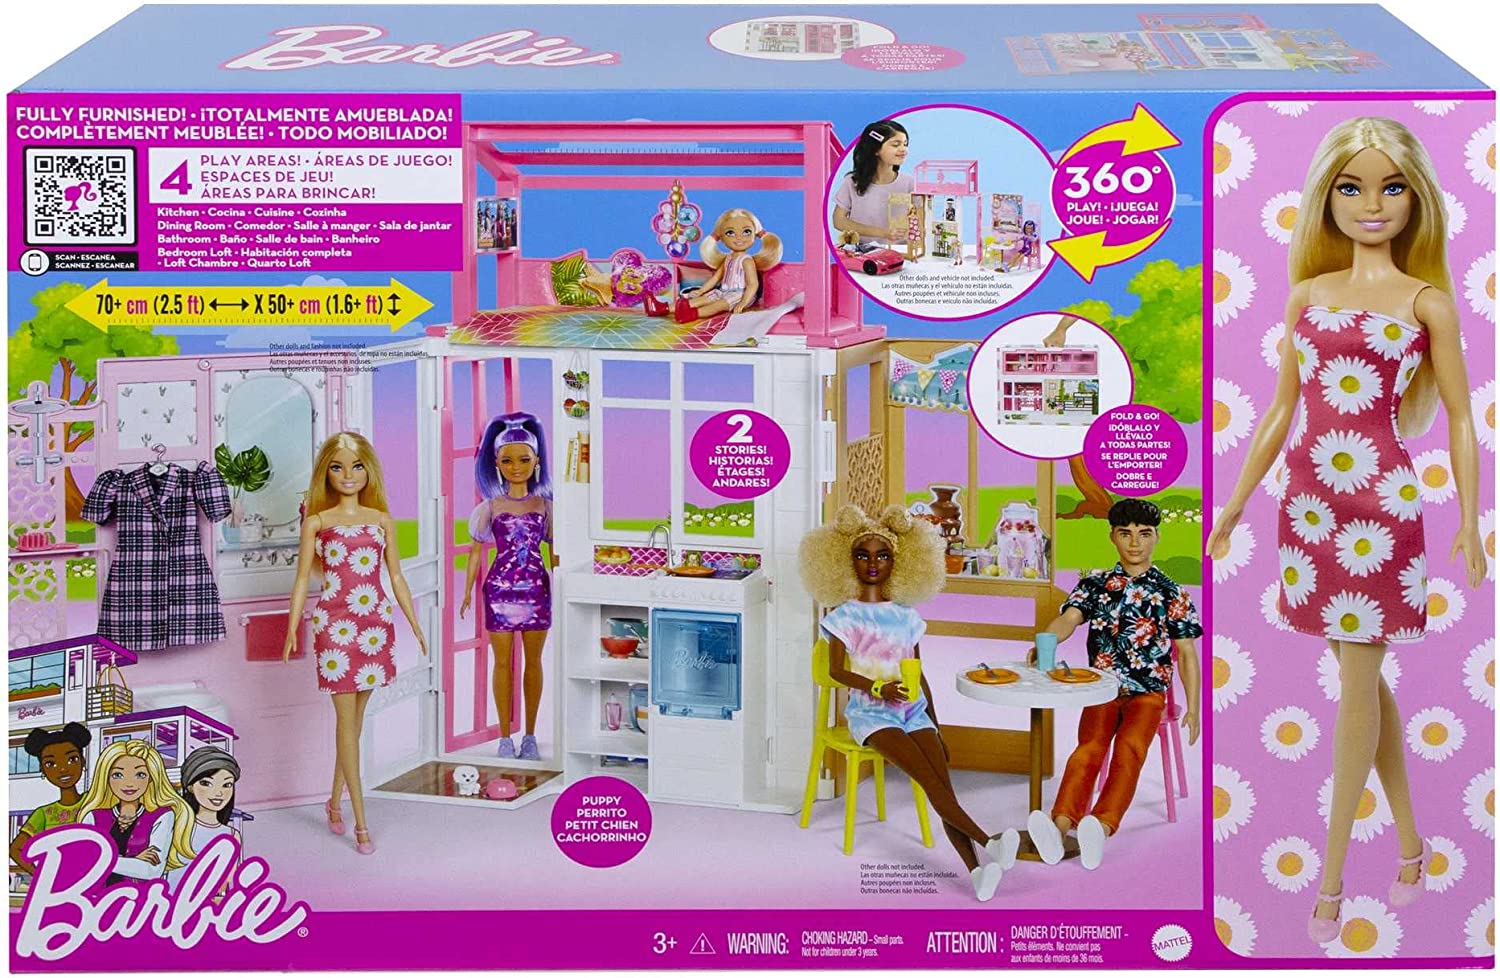 Barbie loft 2022 con bambola. questa casa di barbie completamente ammobiliata apre le porte a storie sempre diverse, con 2 piani e 4 aree gioco! - MATTEL GAMES